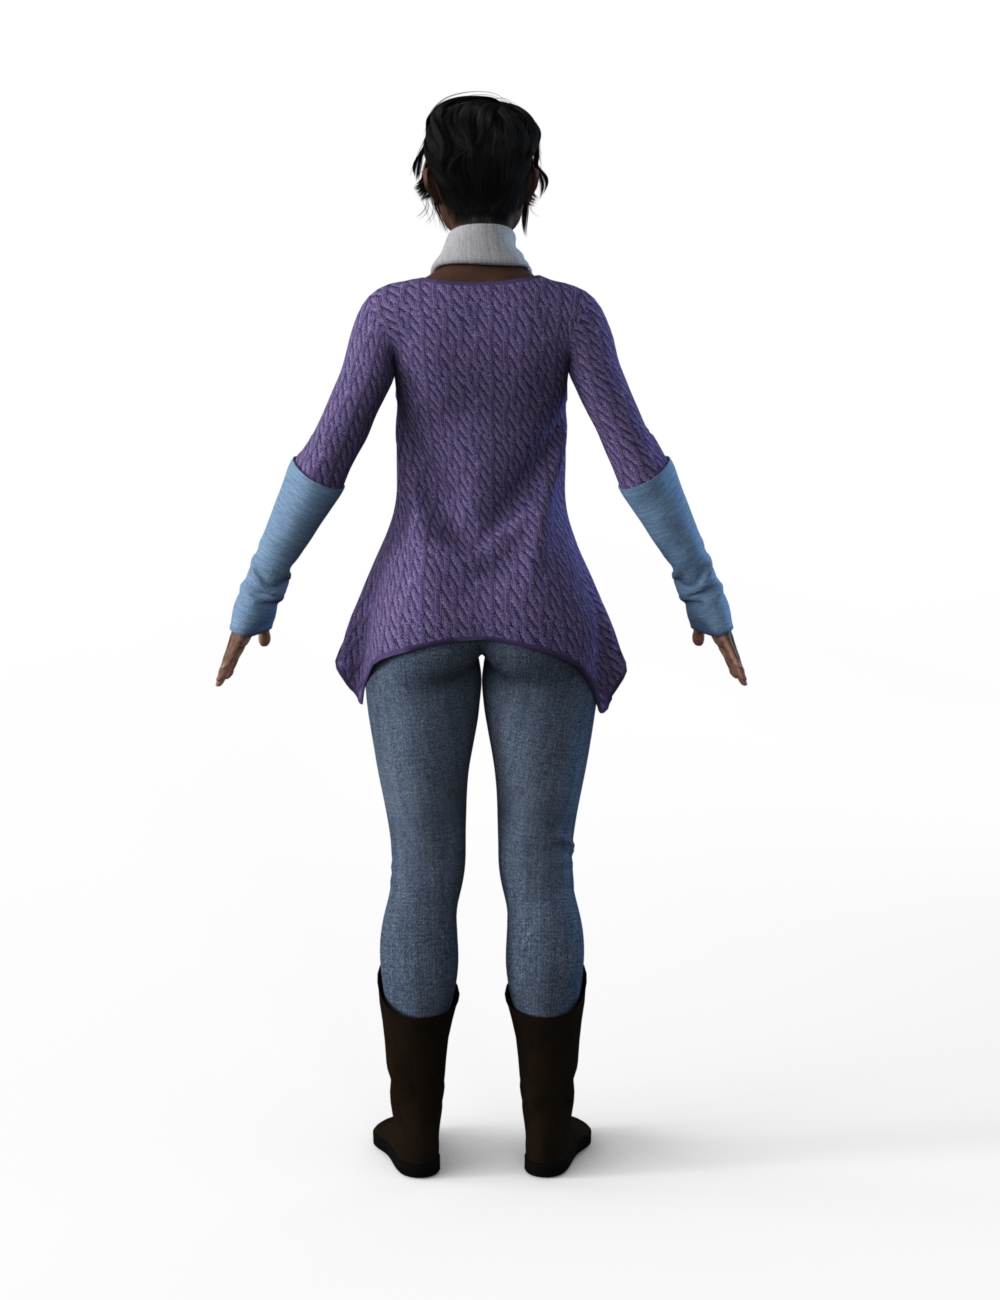 FBX- Lynsey Frosty Winter Outfit by: Paleo, 3D Models by Daz 3D